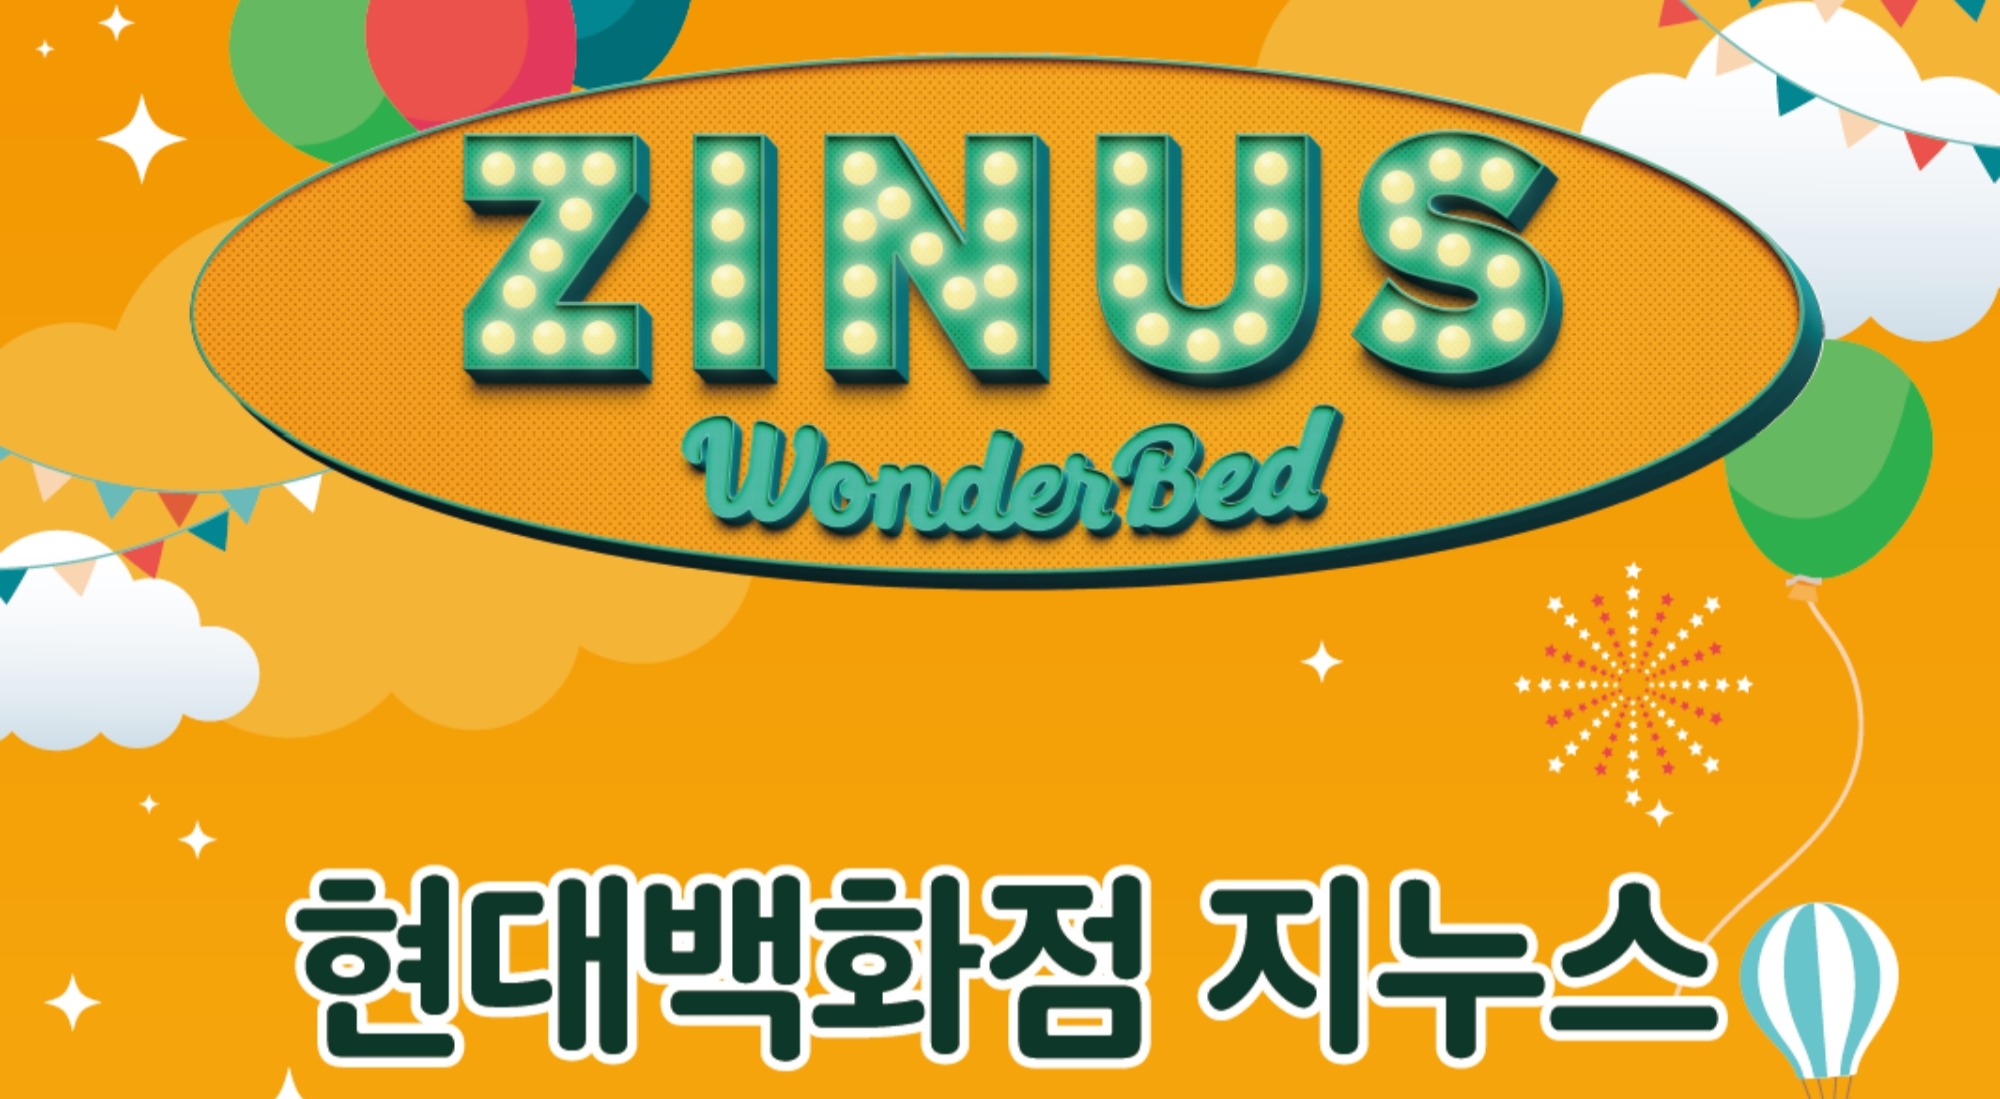 [POP-UP STORE]
지누스(ZINUS)
원더베드 사진